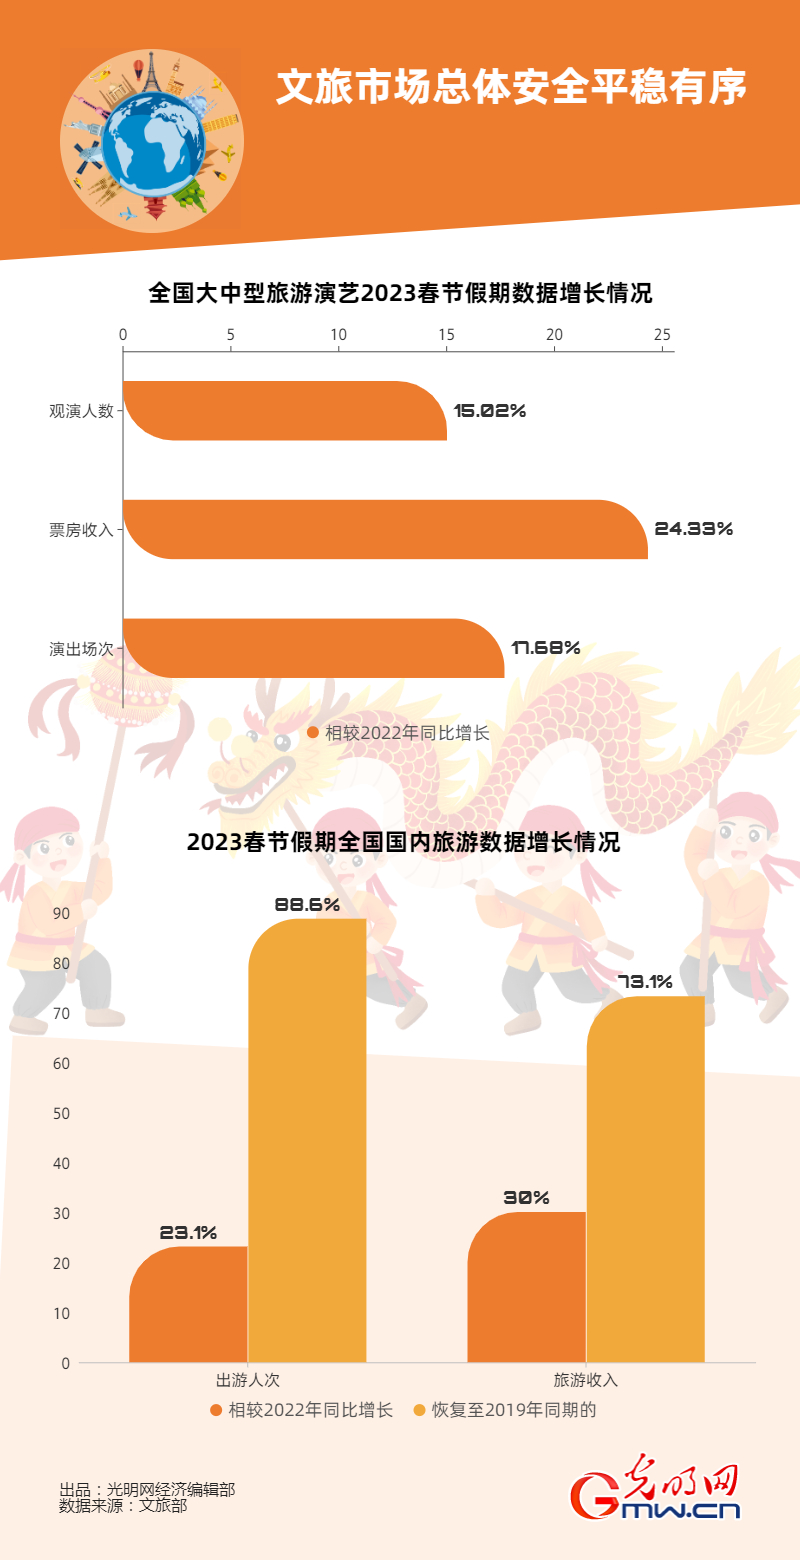 【强信心】从春节假期消费数据 看中国经济的强大活力